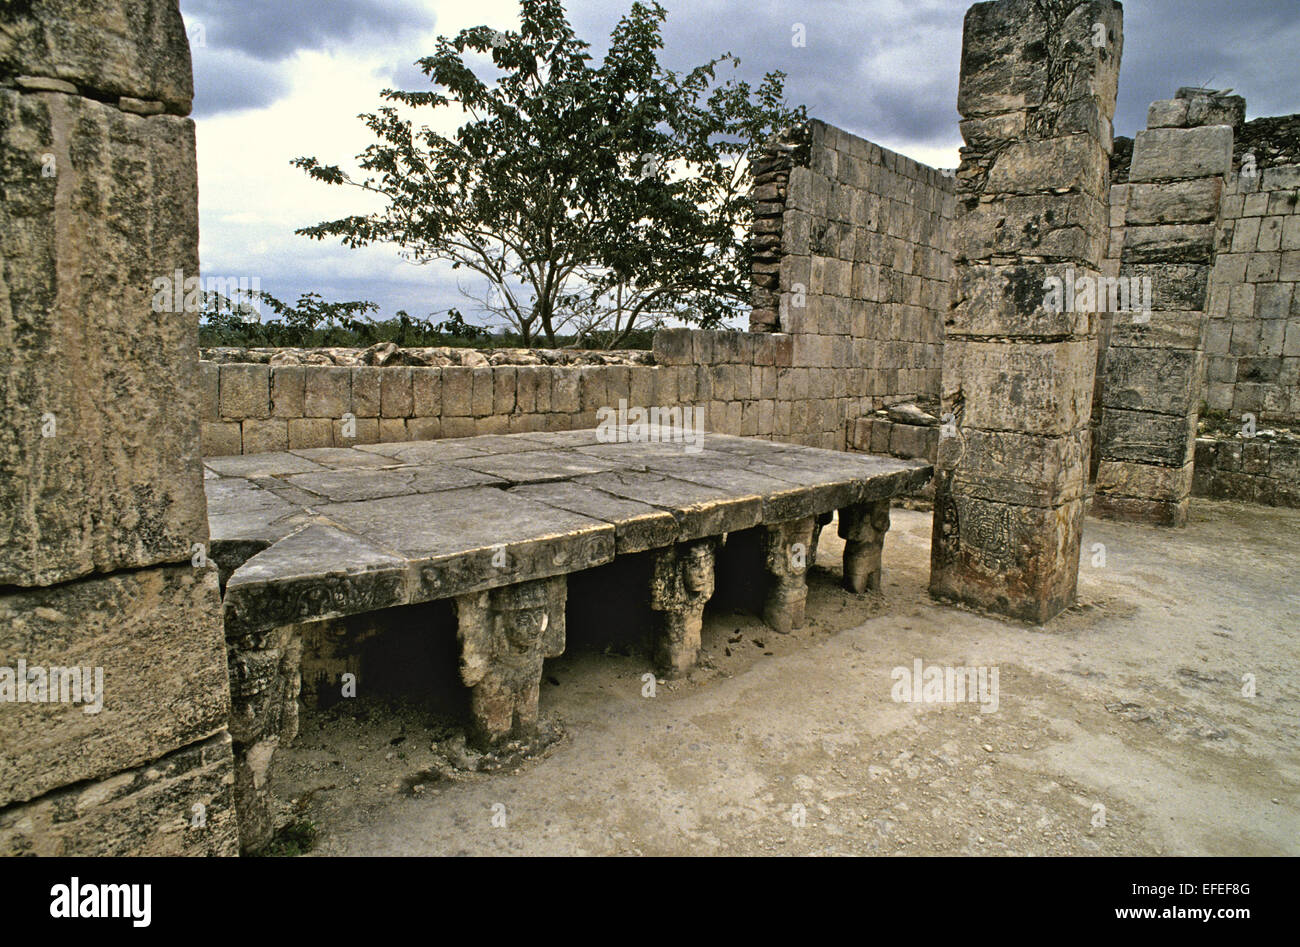 Messico - Chichen Itza su dei migliori siti noti. Con ben conservato e restorded edifici - questo è l'altare di pietra che si trova sul retro del Tempio dei Guerrieri Foto Stock